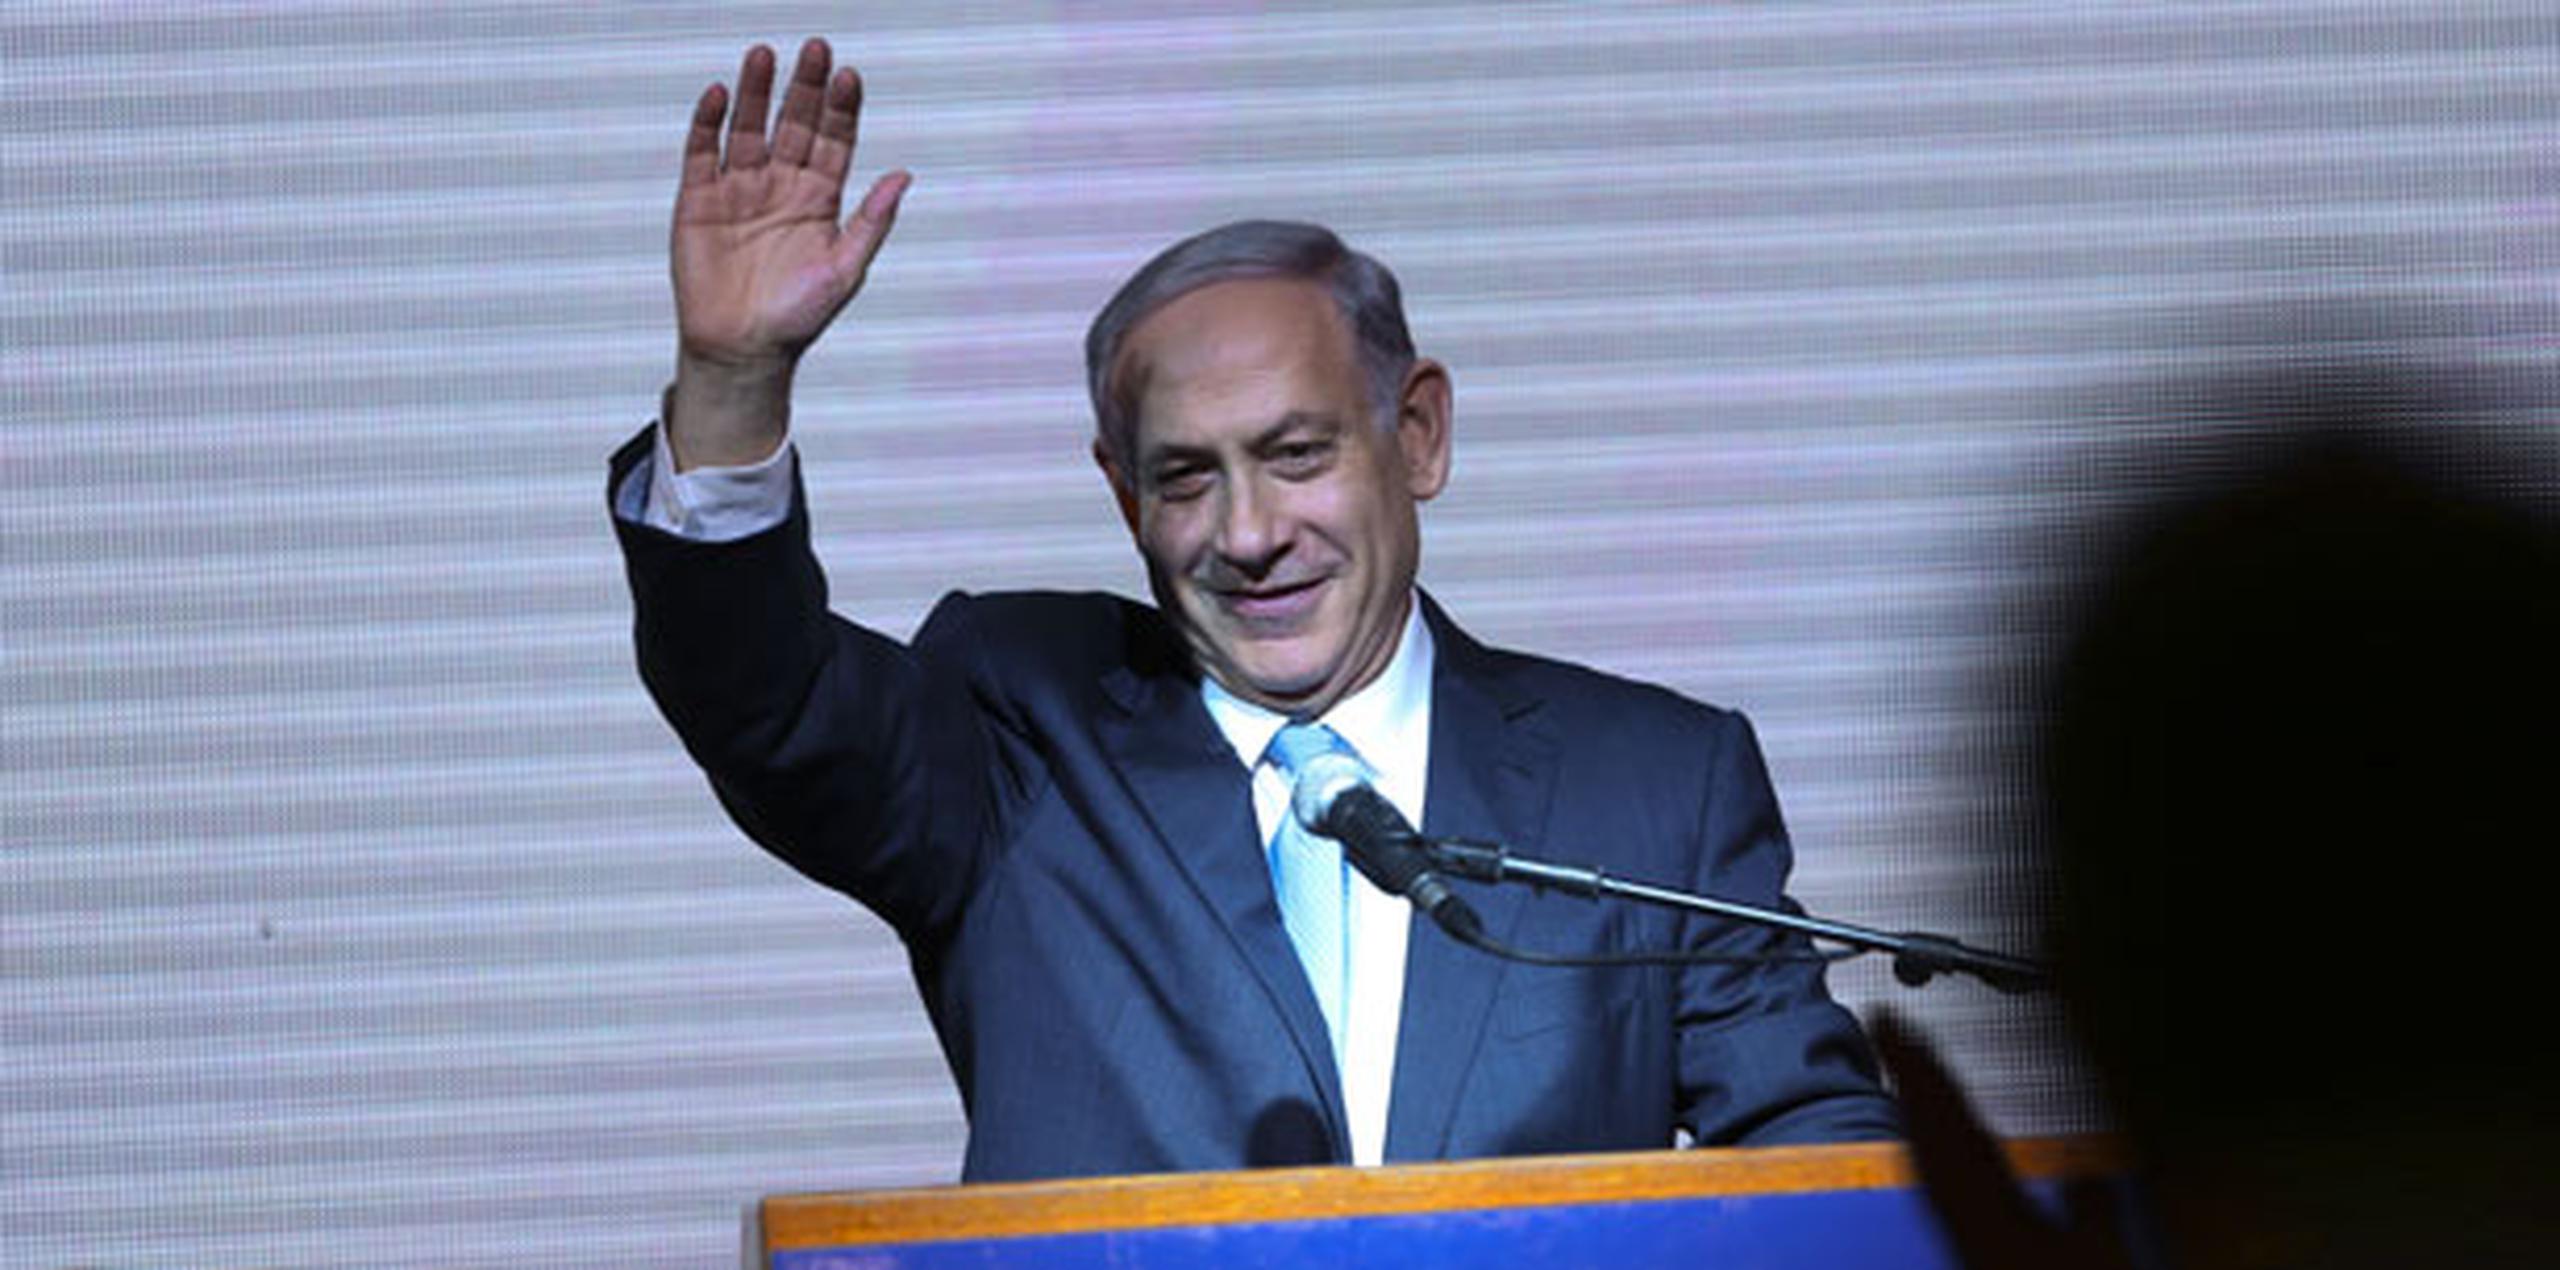 Las elecciones estaban ampliamente consideradas como un referendo sobre Netanyahu, que ha gobernado el país durante los últimos seis años. (Prensa Asociada)